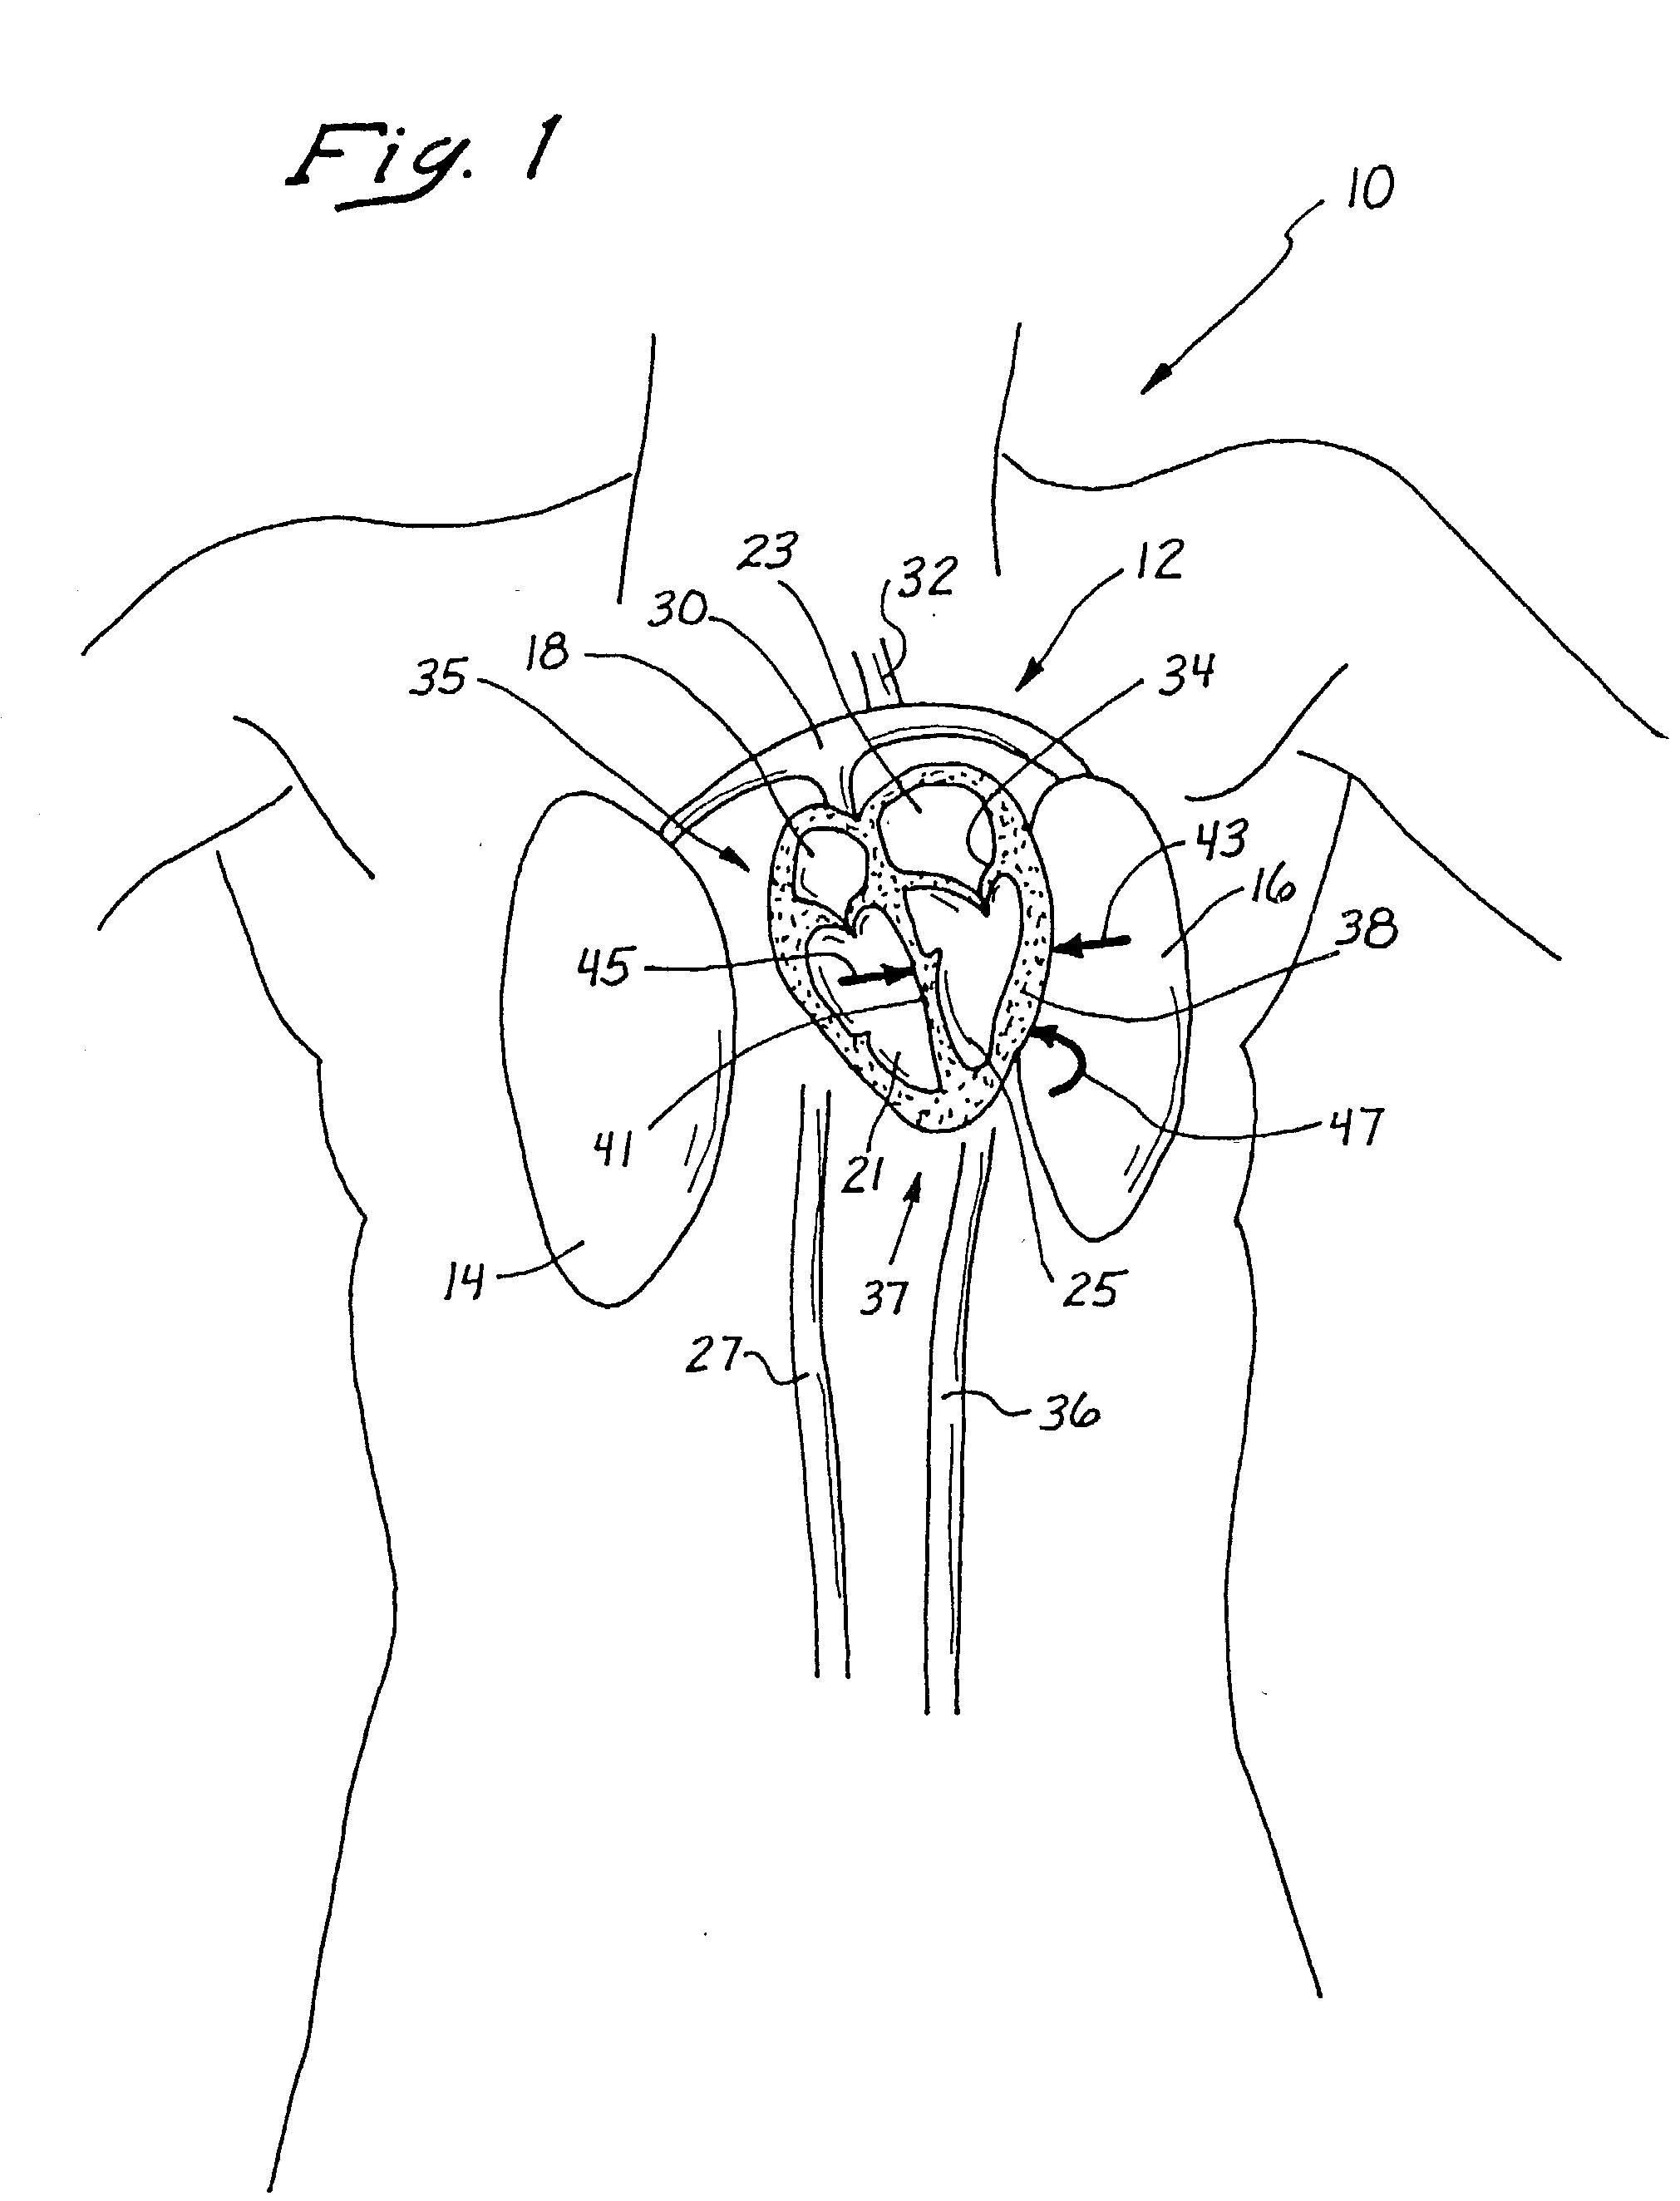 Anterior segment ventricular restoration apparatus and method